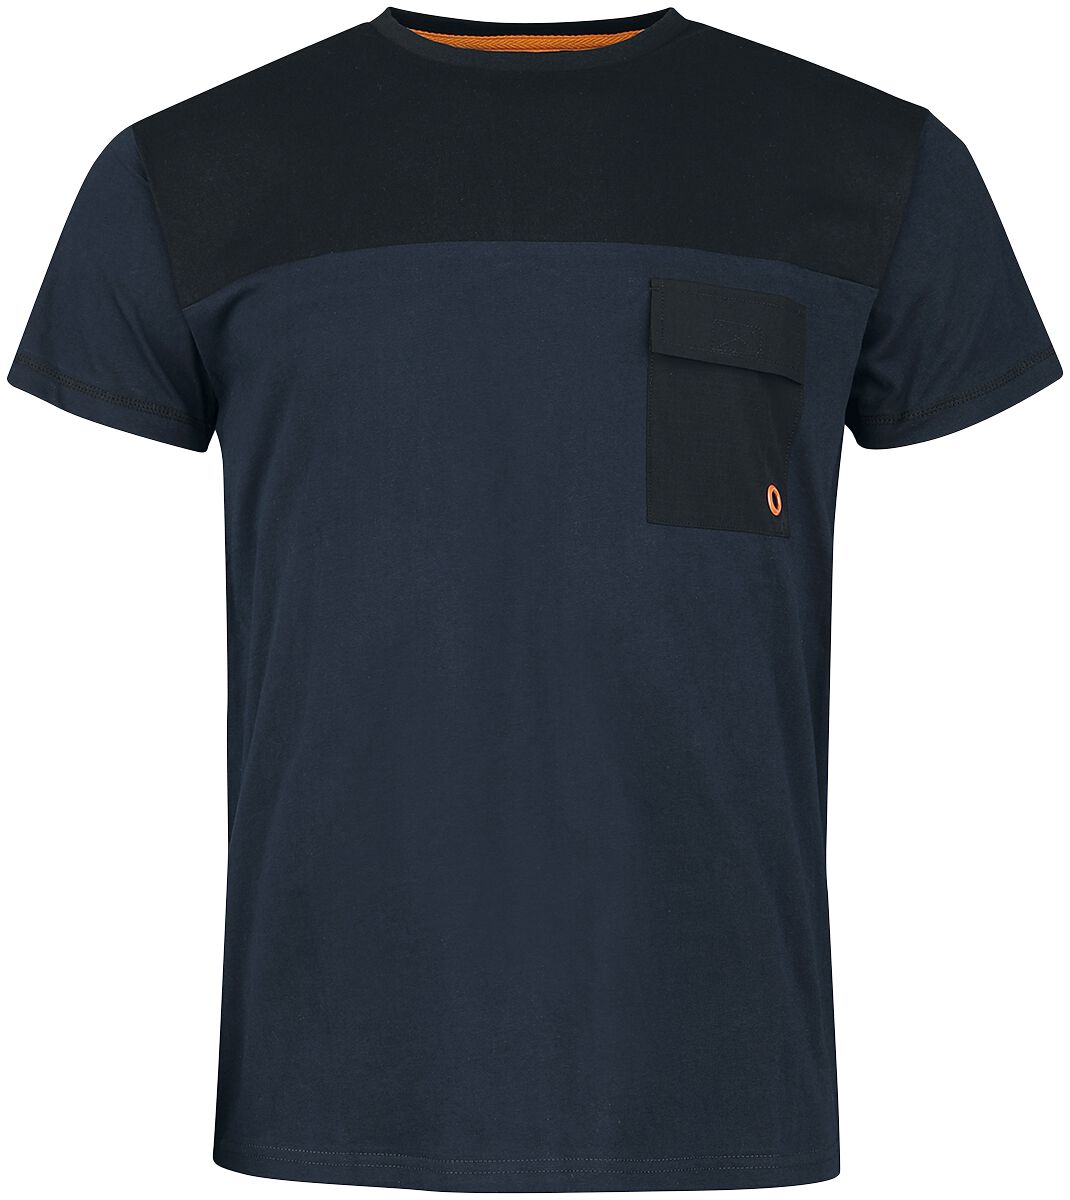 Counter-Strike Global Offensive - CS:GO T-Shirt blau in XL